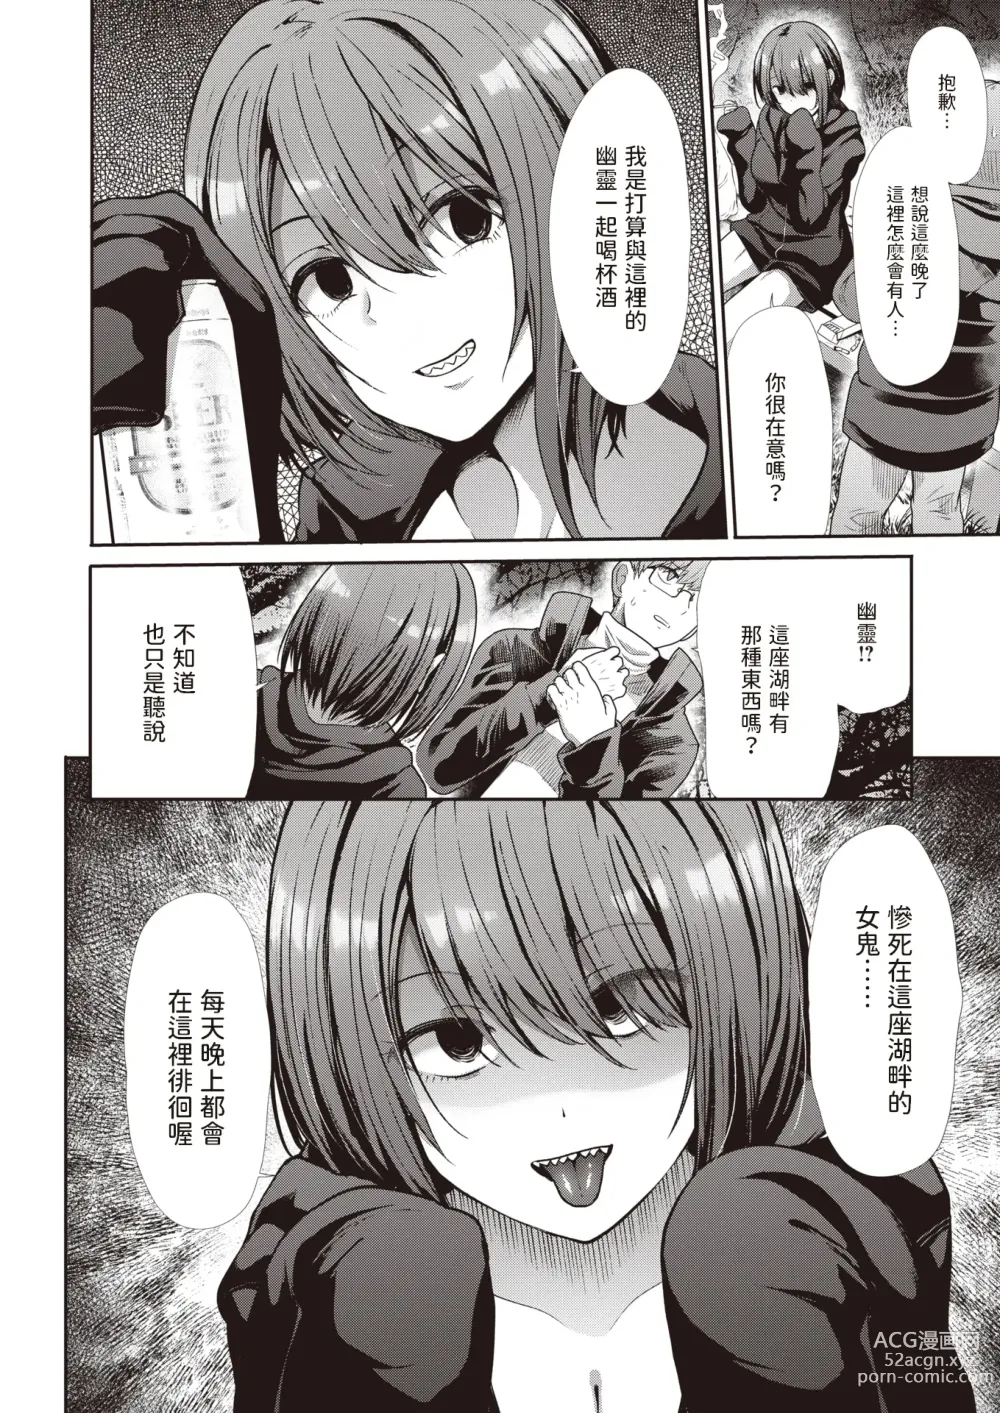 Page 2 of manga Yomawari - Walking at Night